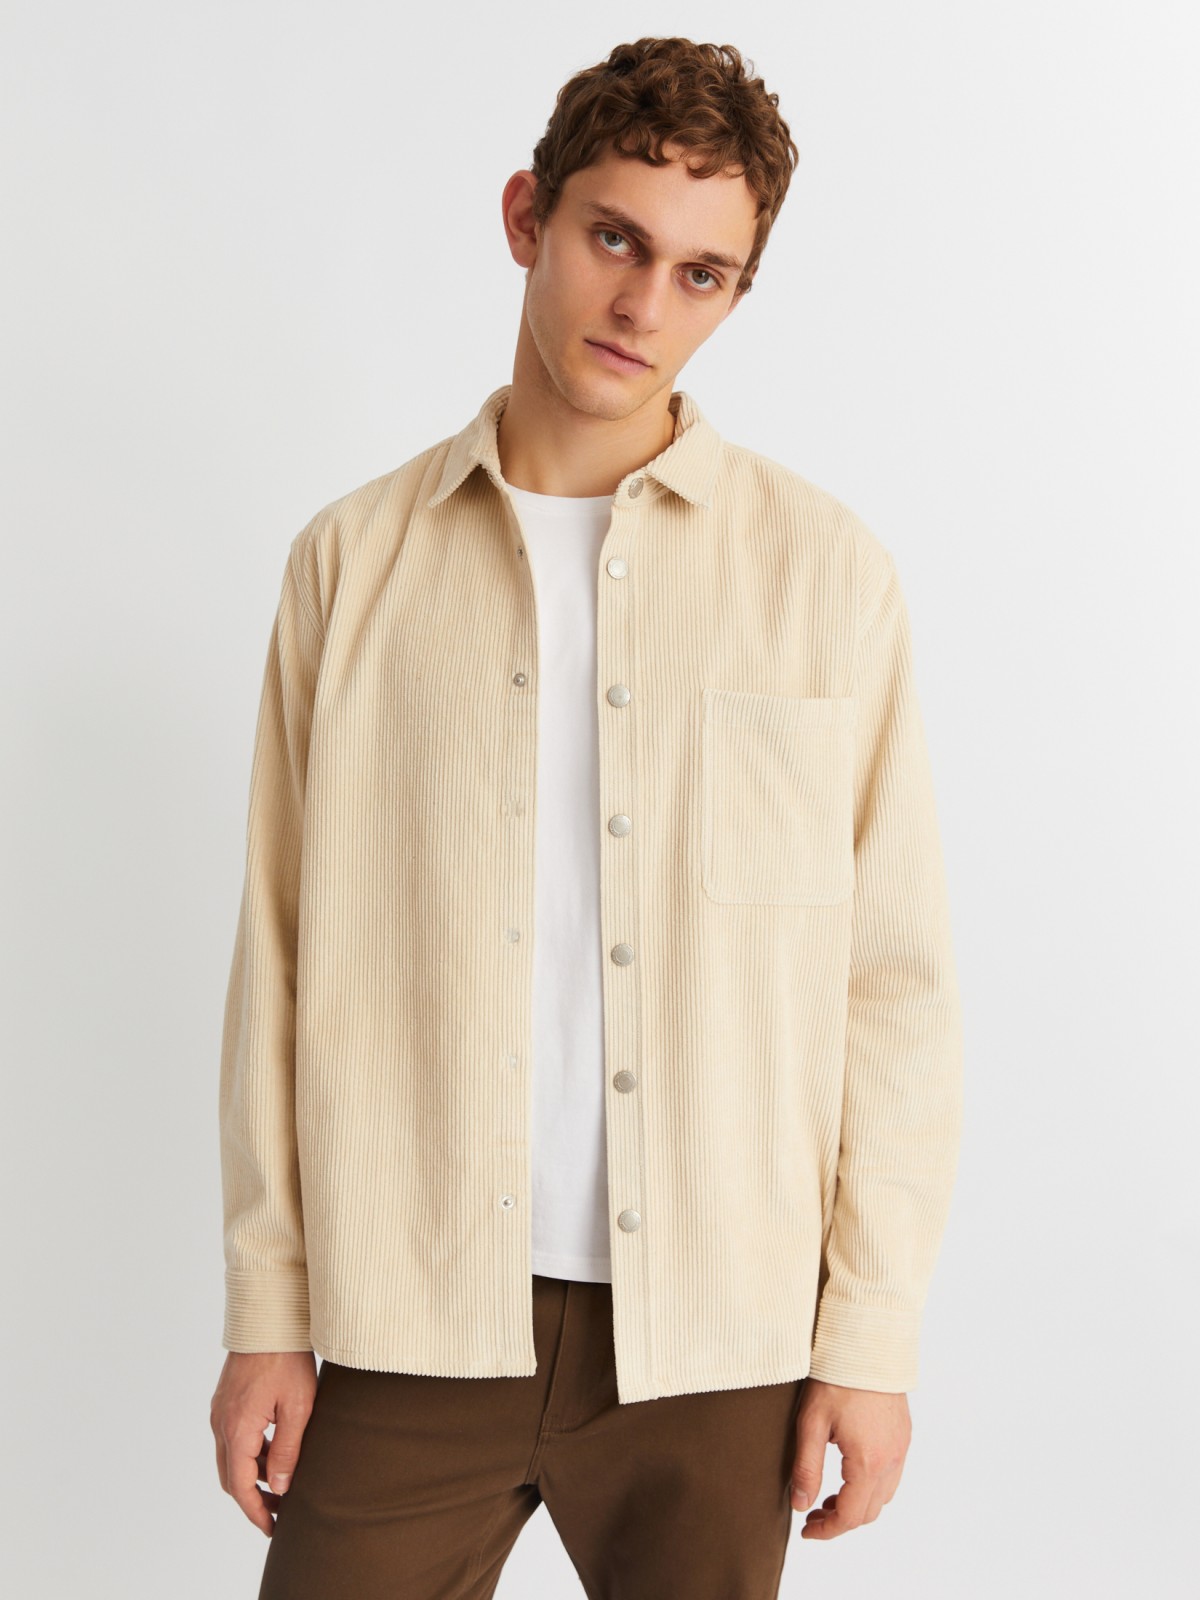 Вельветовая куртка-рубашка из хлопка с длинным рукавом zolla 21342214R041, цвет горчичный, размер M - фото 1